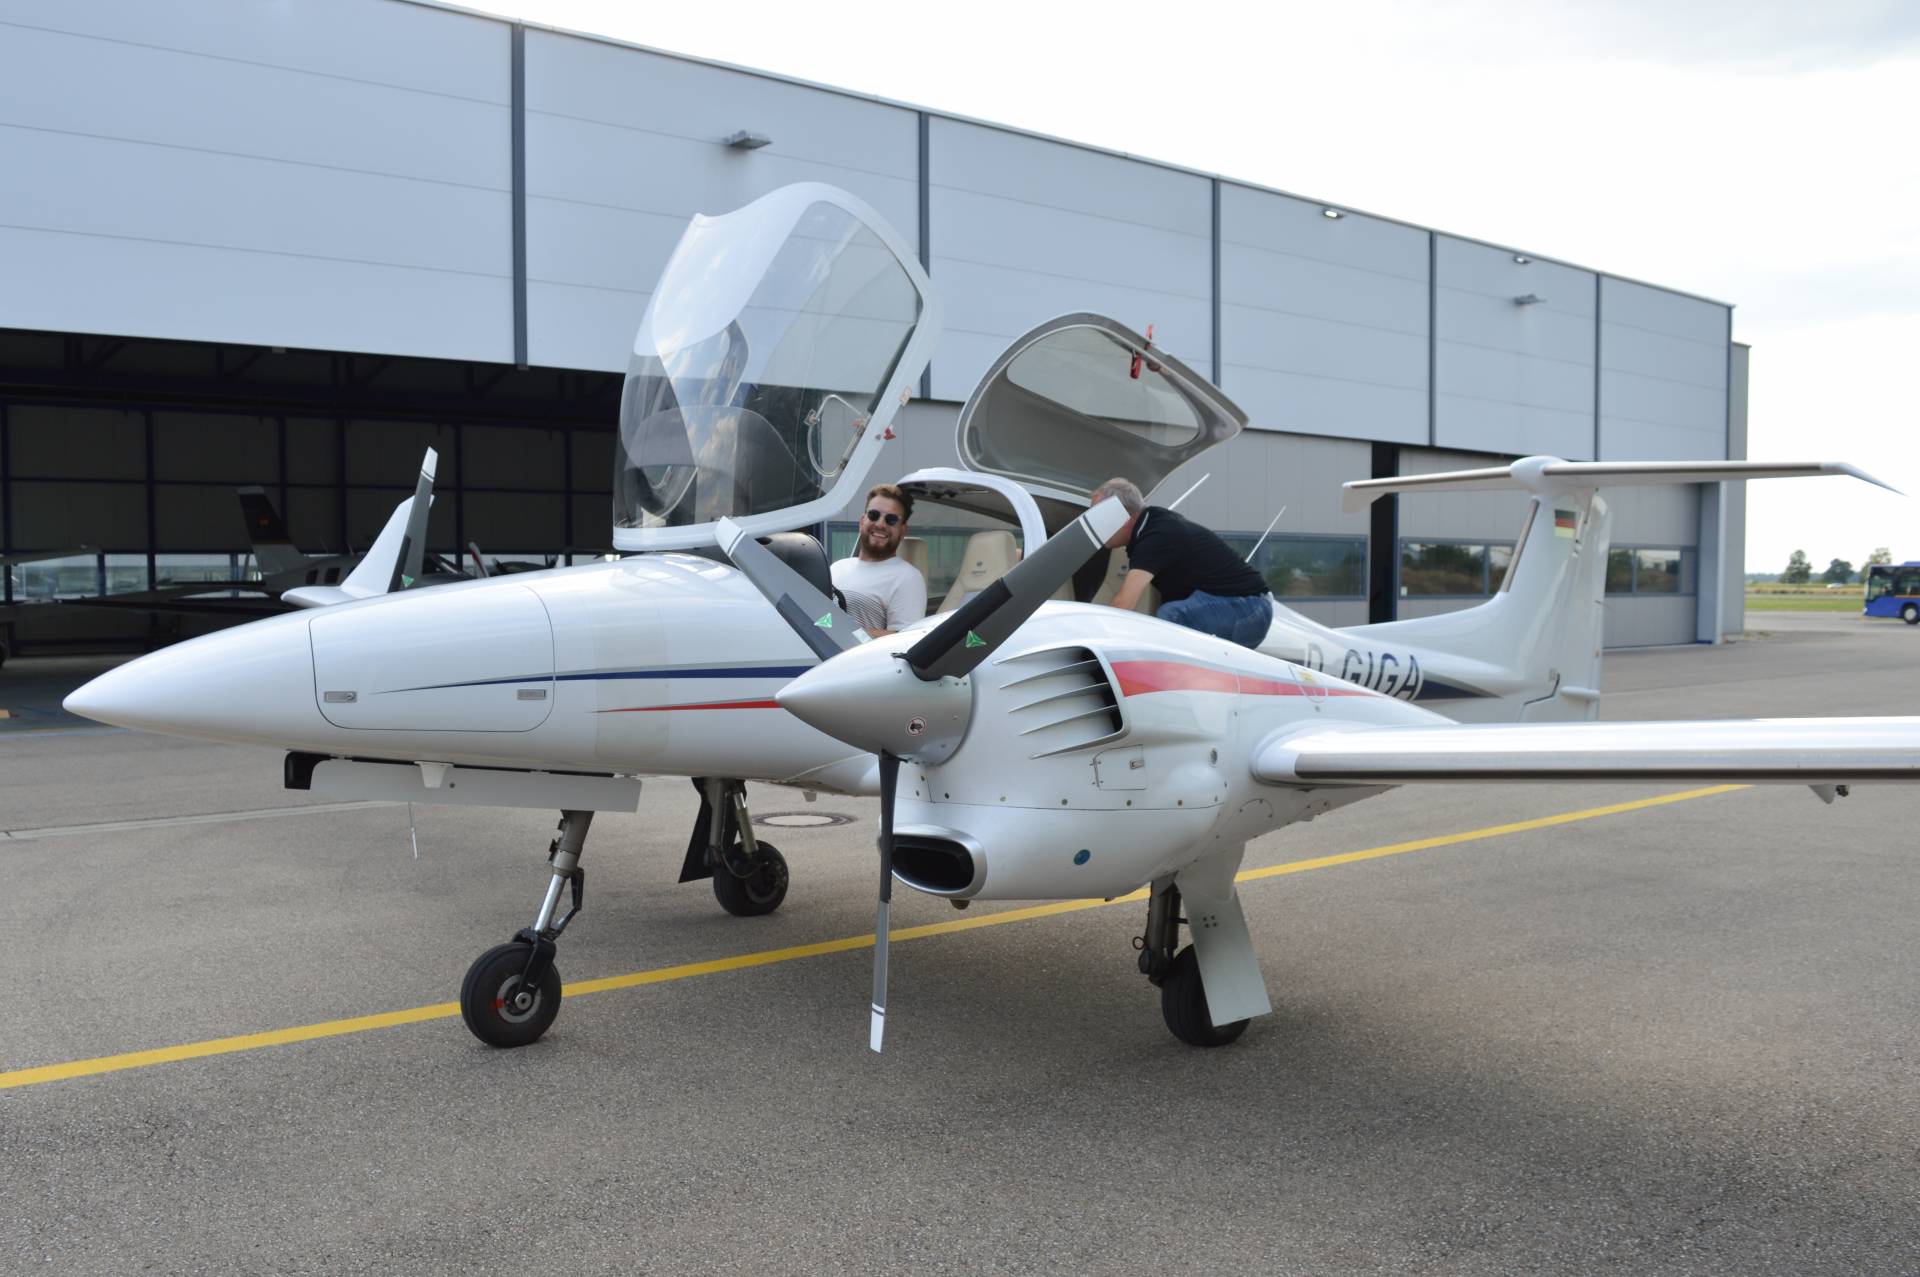 DA42NG - ein zweimotoriger fliegendes Labor an der Fakultät für Maschinenbau und Verfahrenstechnik Augsburg